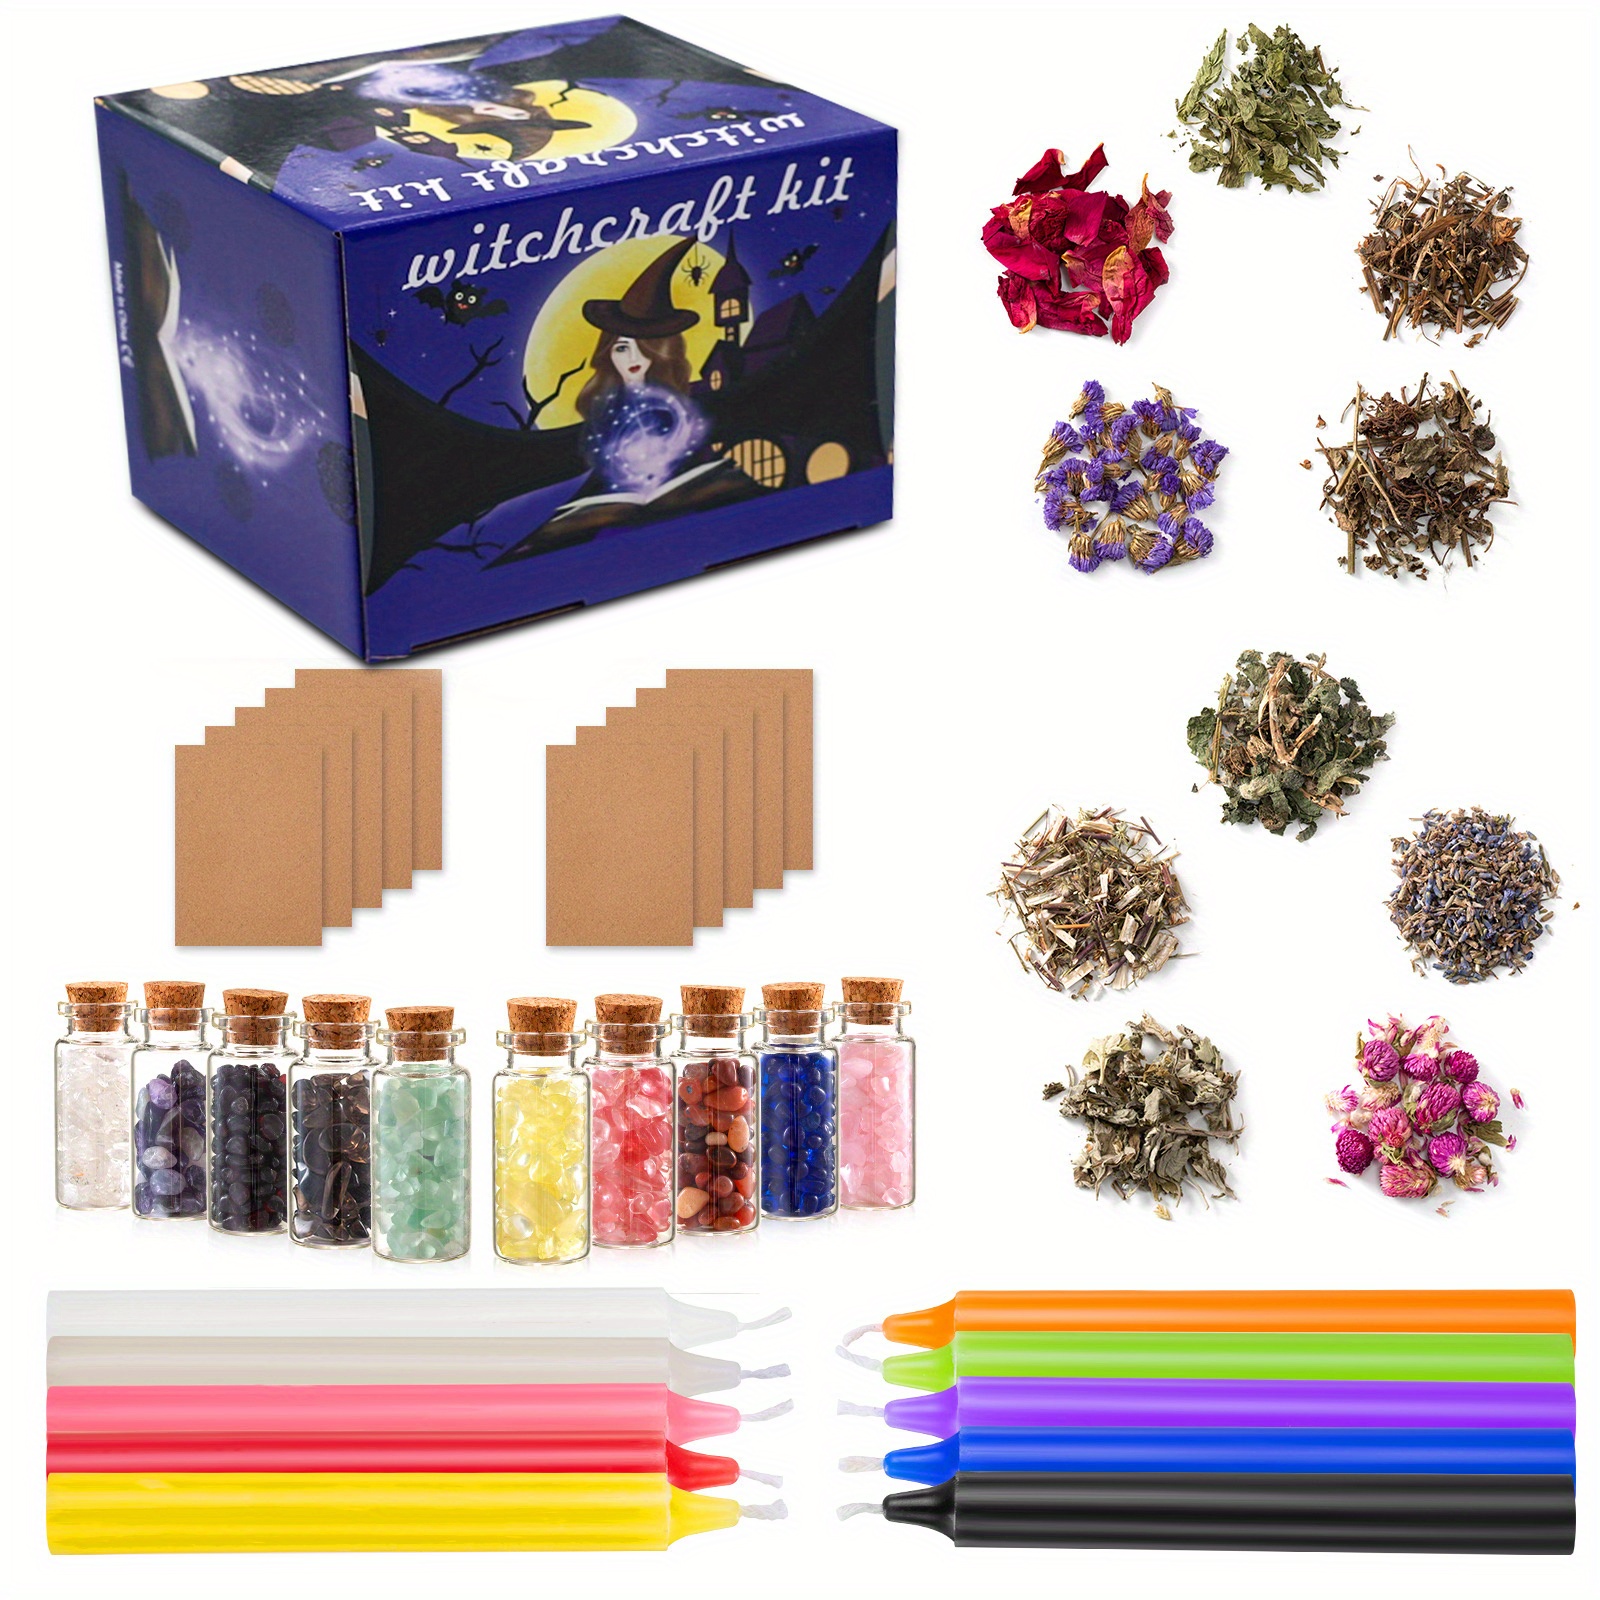 SUPERSUN Kit de fabricación de velas para adultos, regalo de Navidad para  niños y principiantes, incluye cera de abejas, aceites esenciales, tintes y